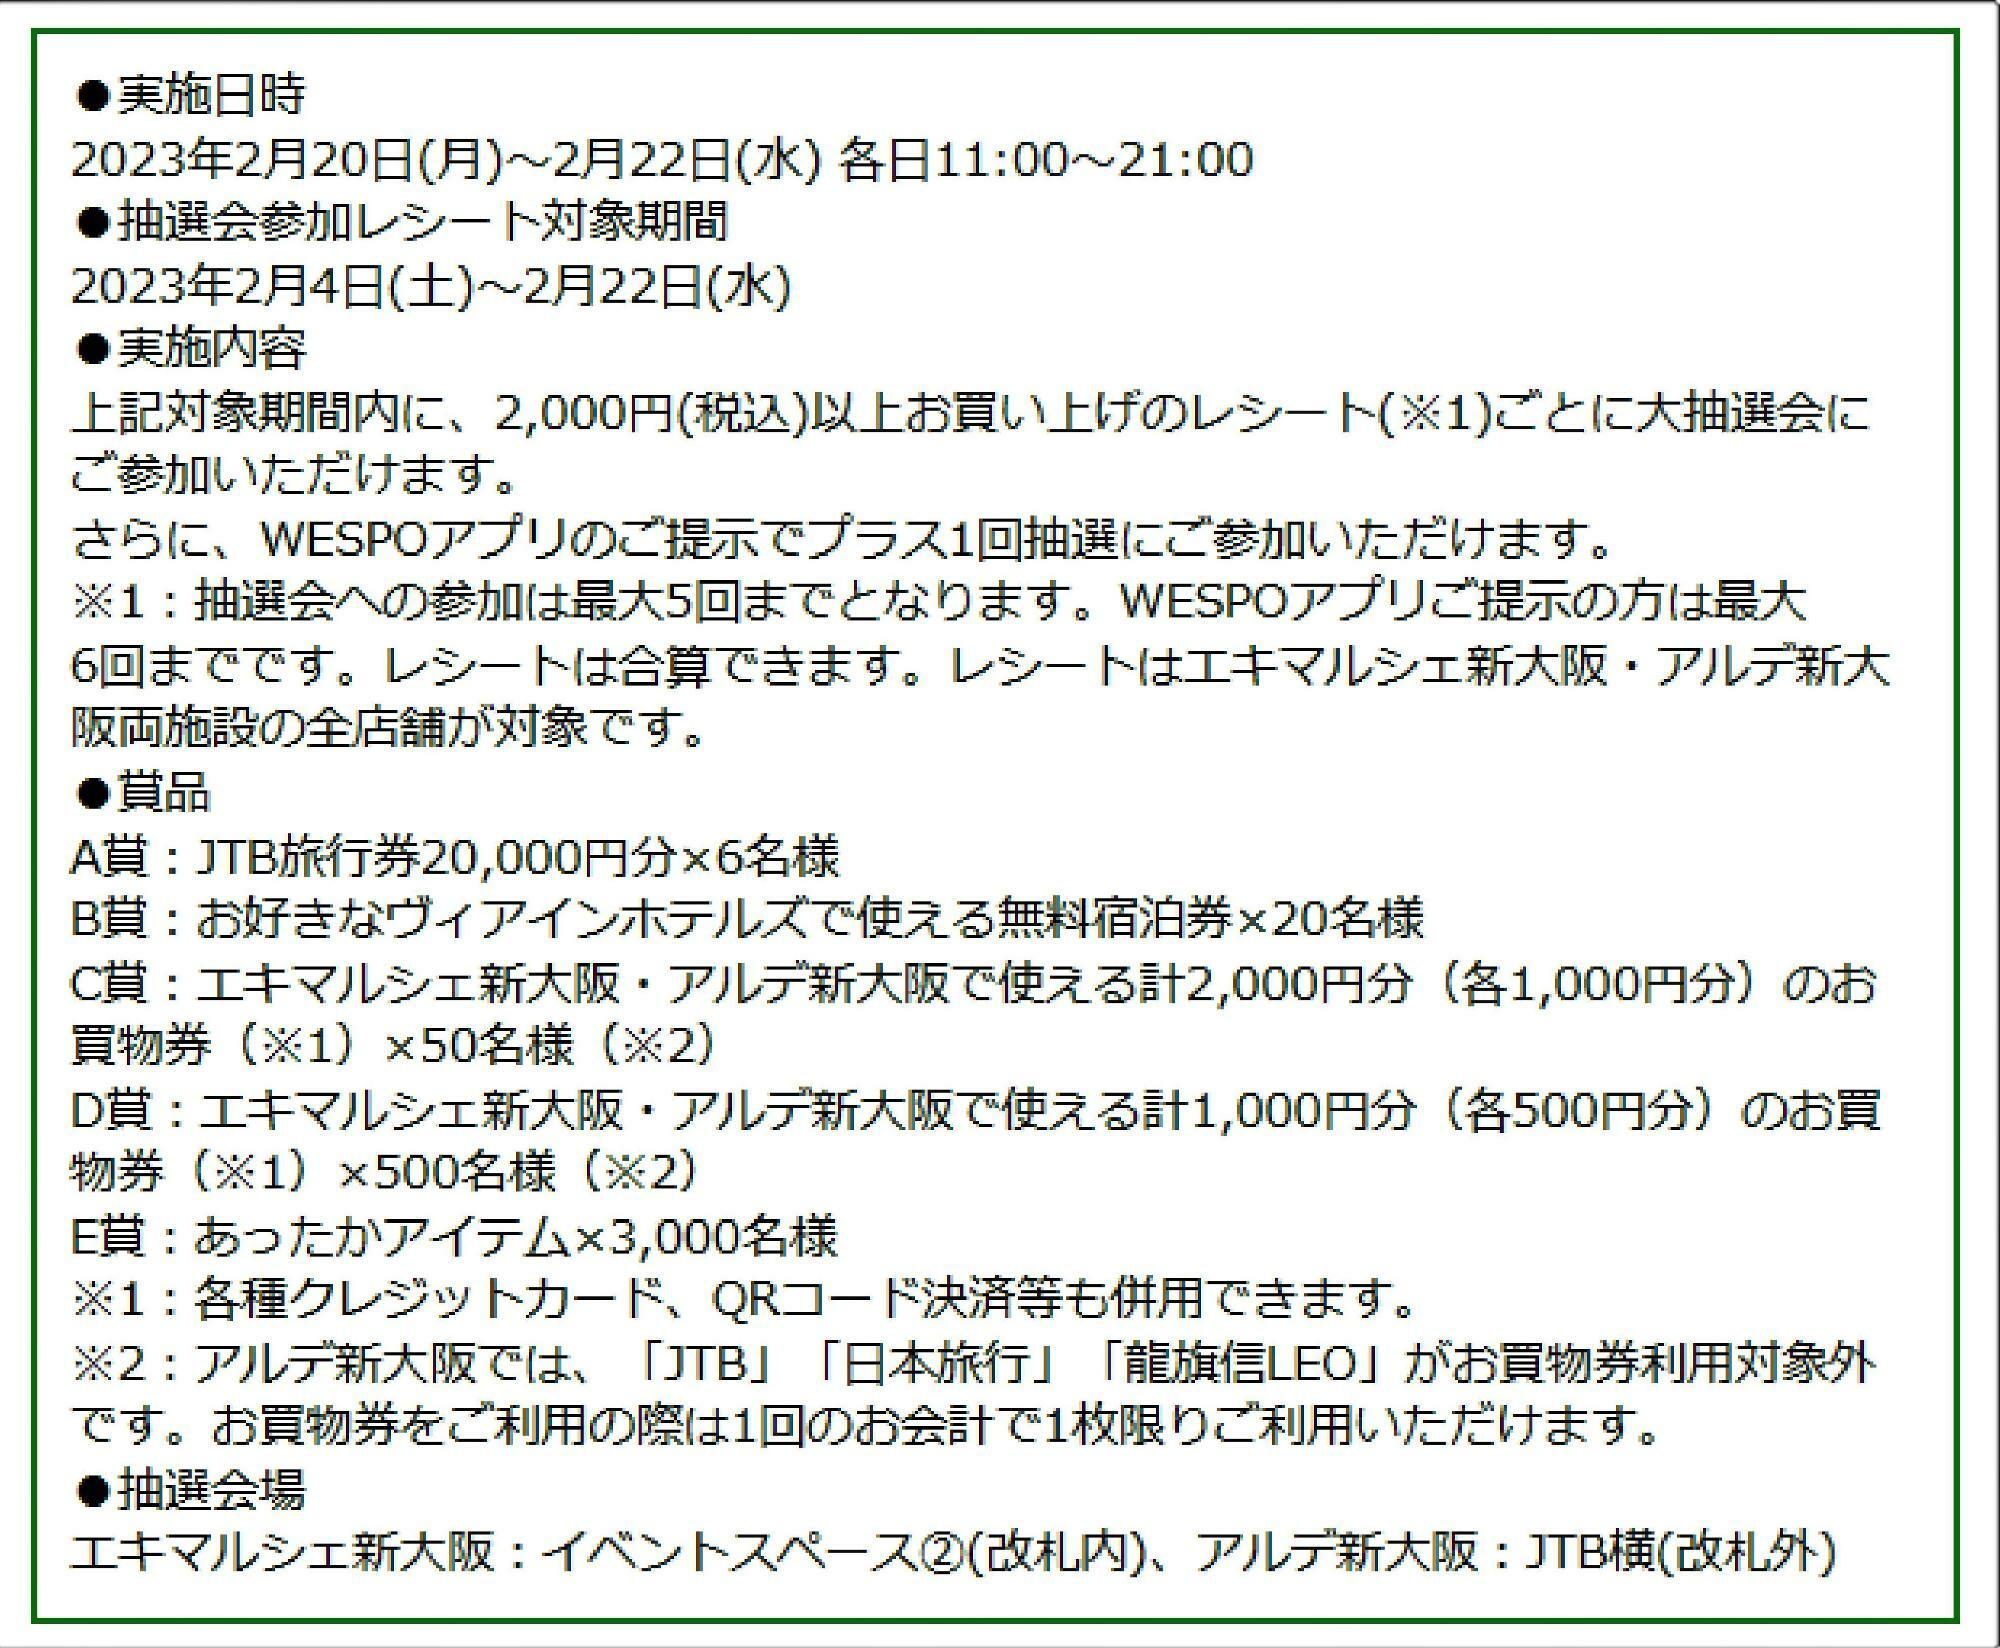 新大阪駅のエキマルシェのホームページの詳細な実施内容。